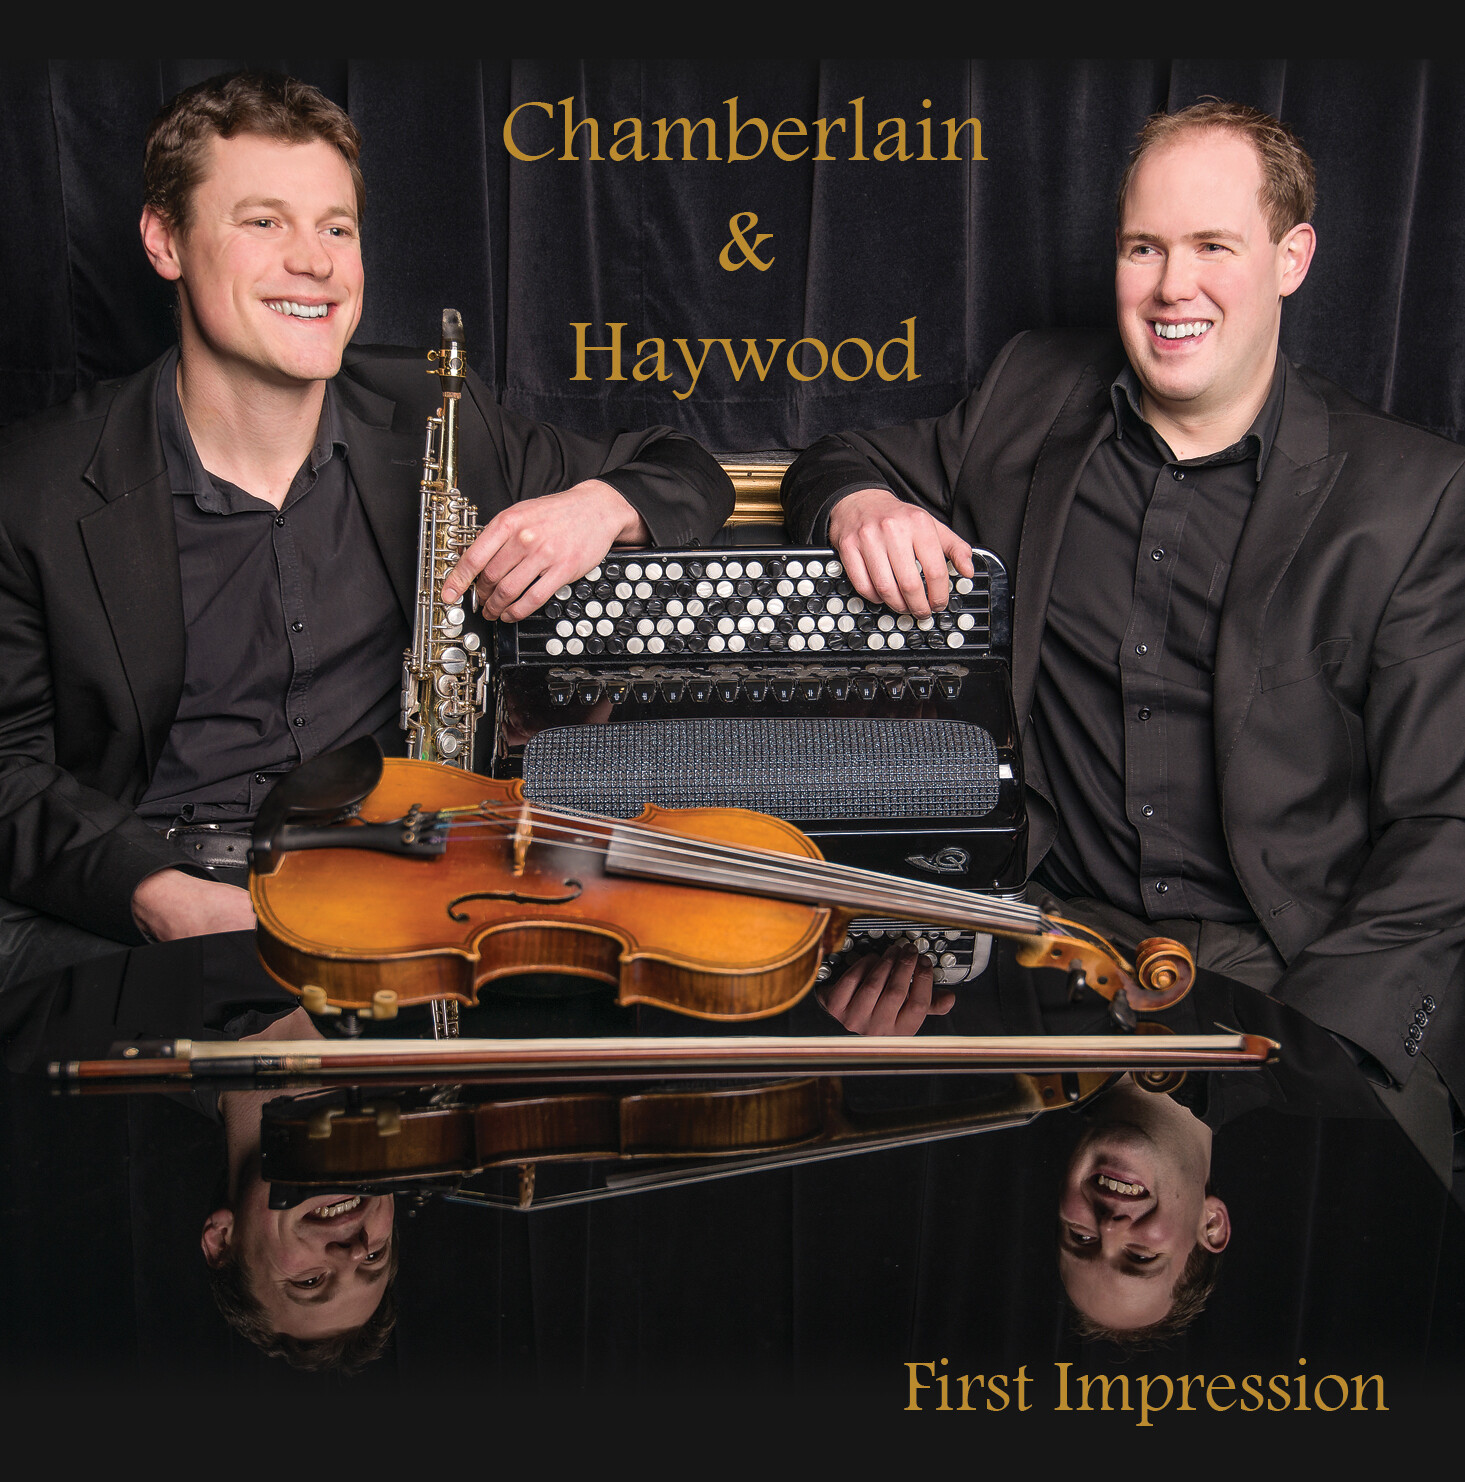 Chamberlain & Haywood